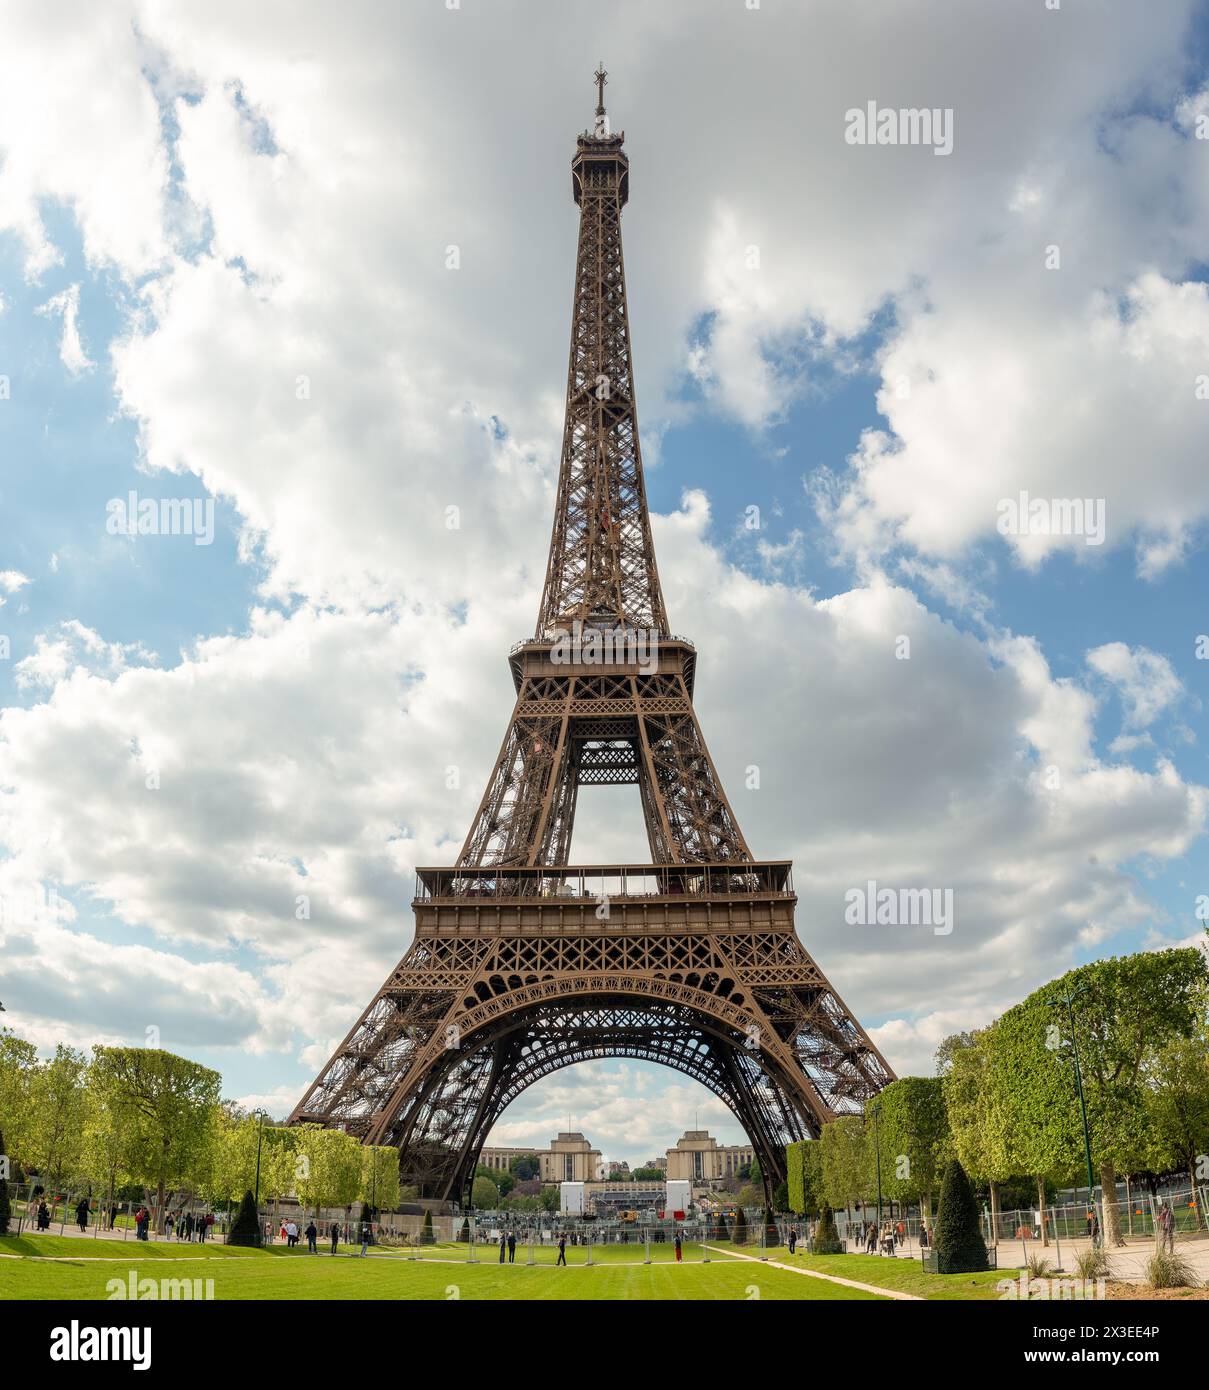 Embrassant les caprices du printemps, la Tour Eiffel se dresse avec un ciel partiellement nuageux en toile de fond, enchantant les visiteurs par son allure intemporelle. Banque D'Images